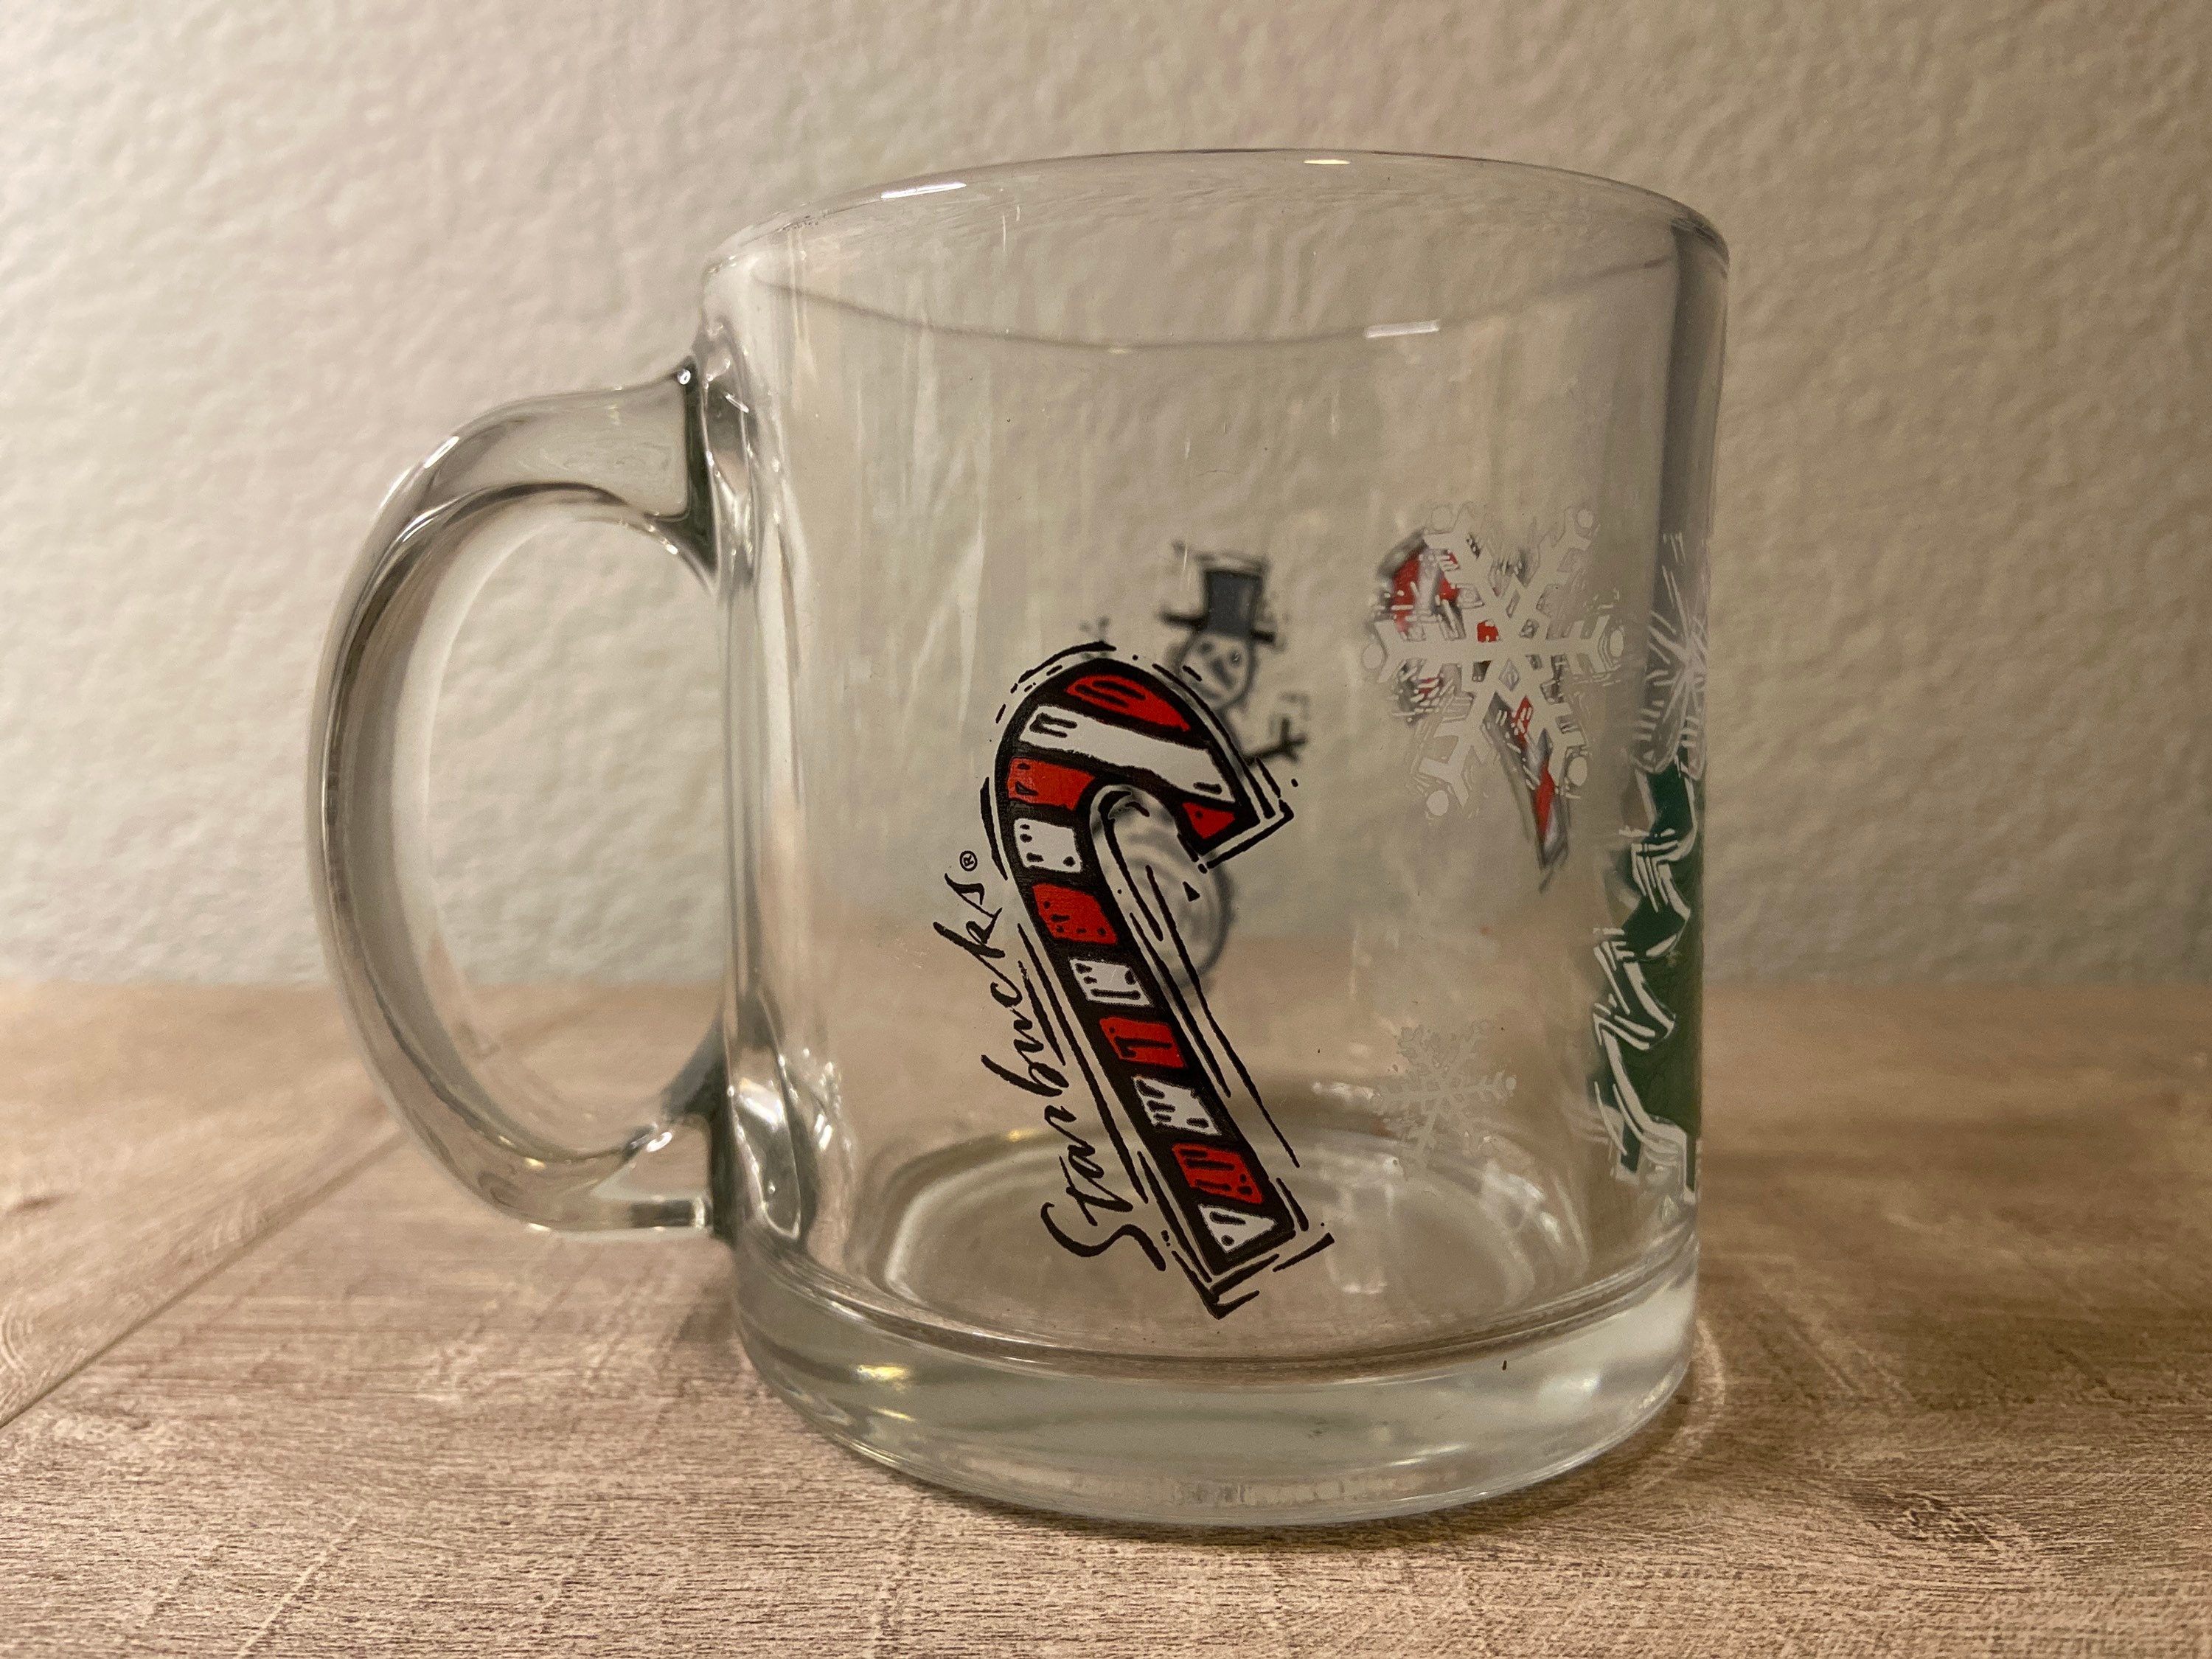 Starbucks Clear Glass Christmas Mug / Tea Mug / Coffee Mug Candy